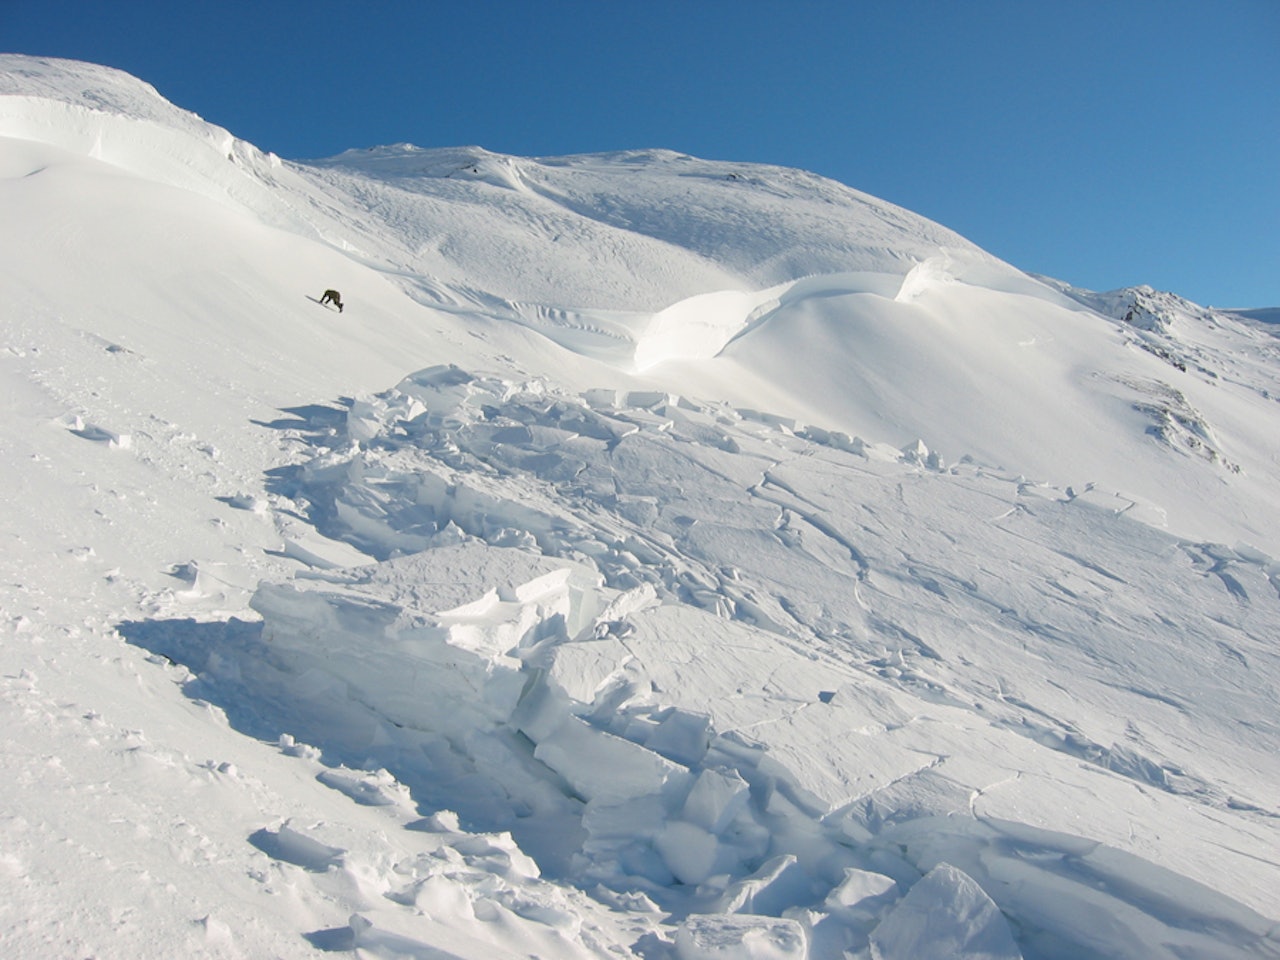 SKREDFARE: To mennesker har omkommet på kort tid i snøskredulykker i Troms, og skredfaren er på ingen måte over. Foto: NGI